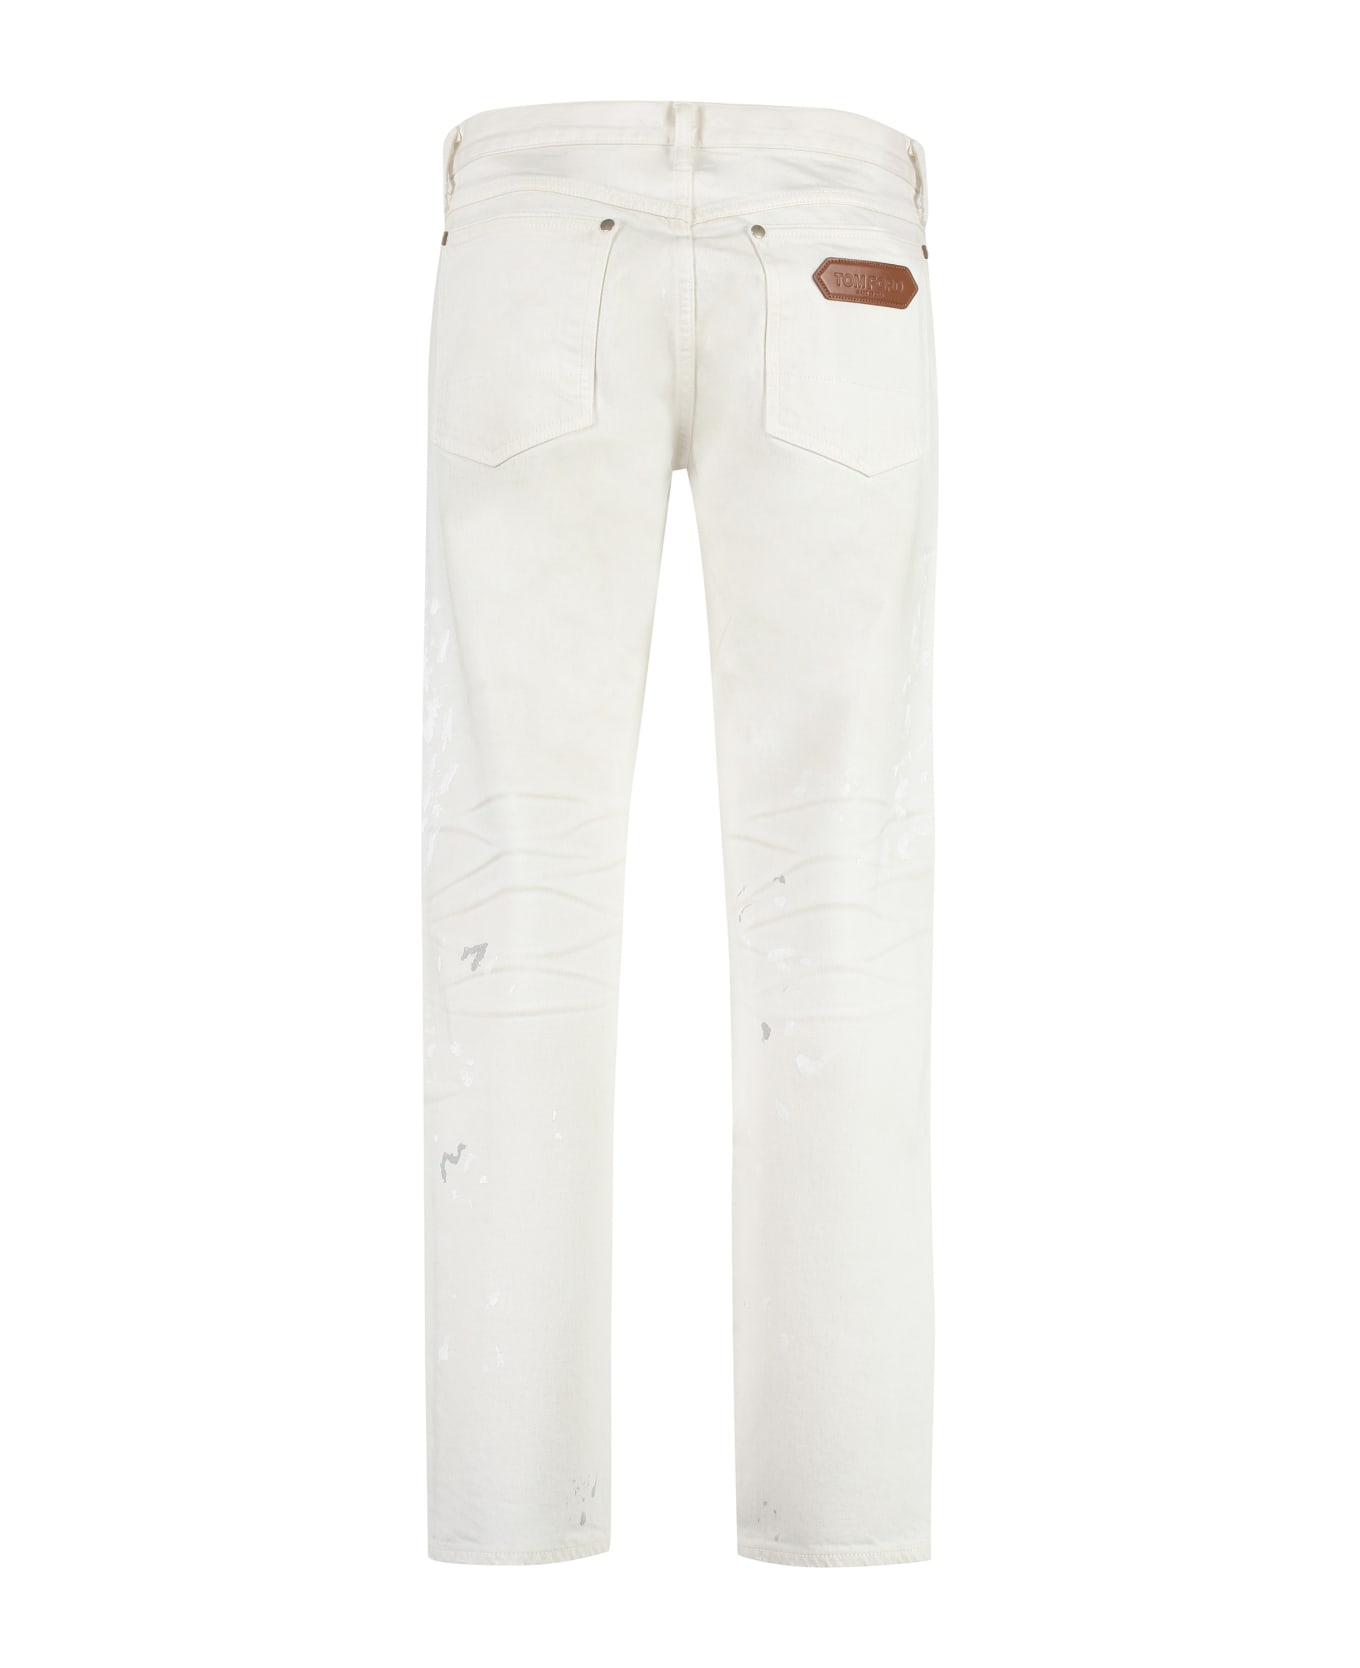 Tom Ford 5-pocket Straight-leg Jeans - White デニム